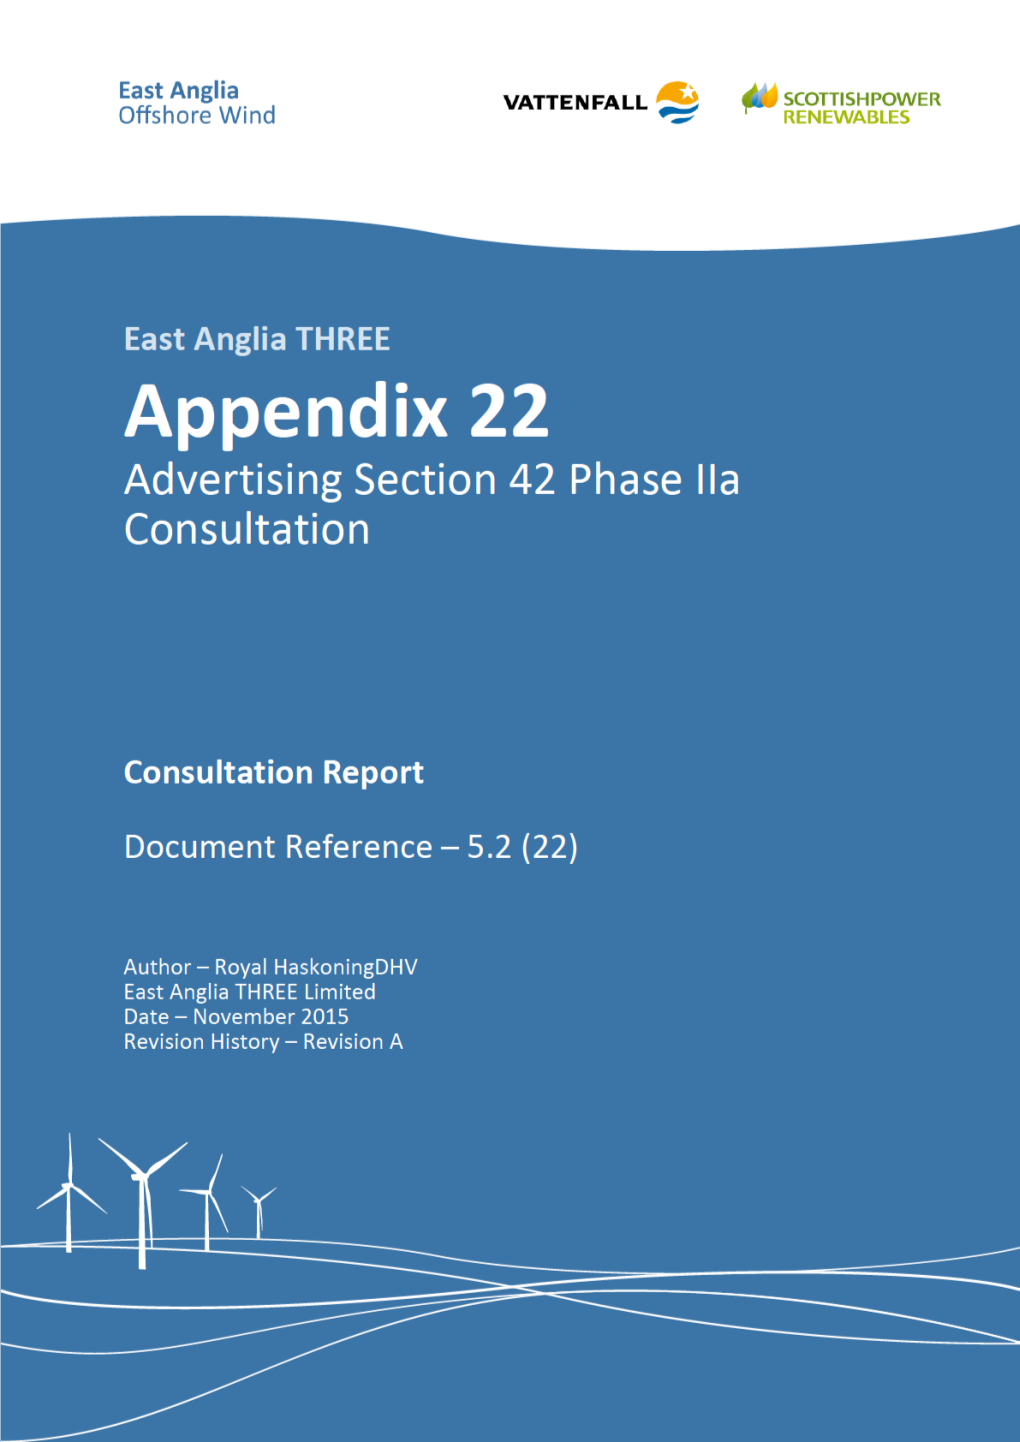 Consultation Report Appendix 22